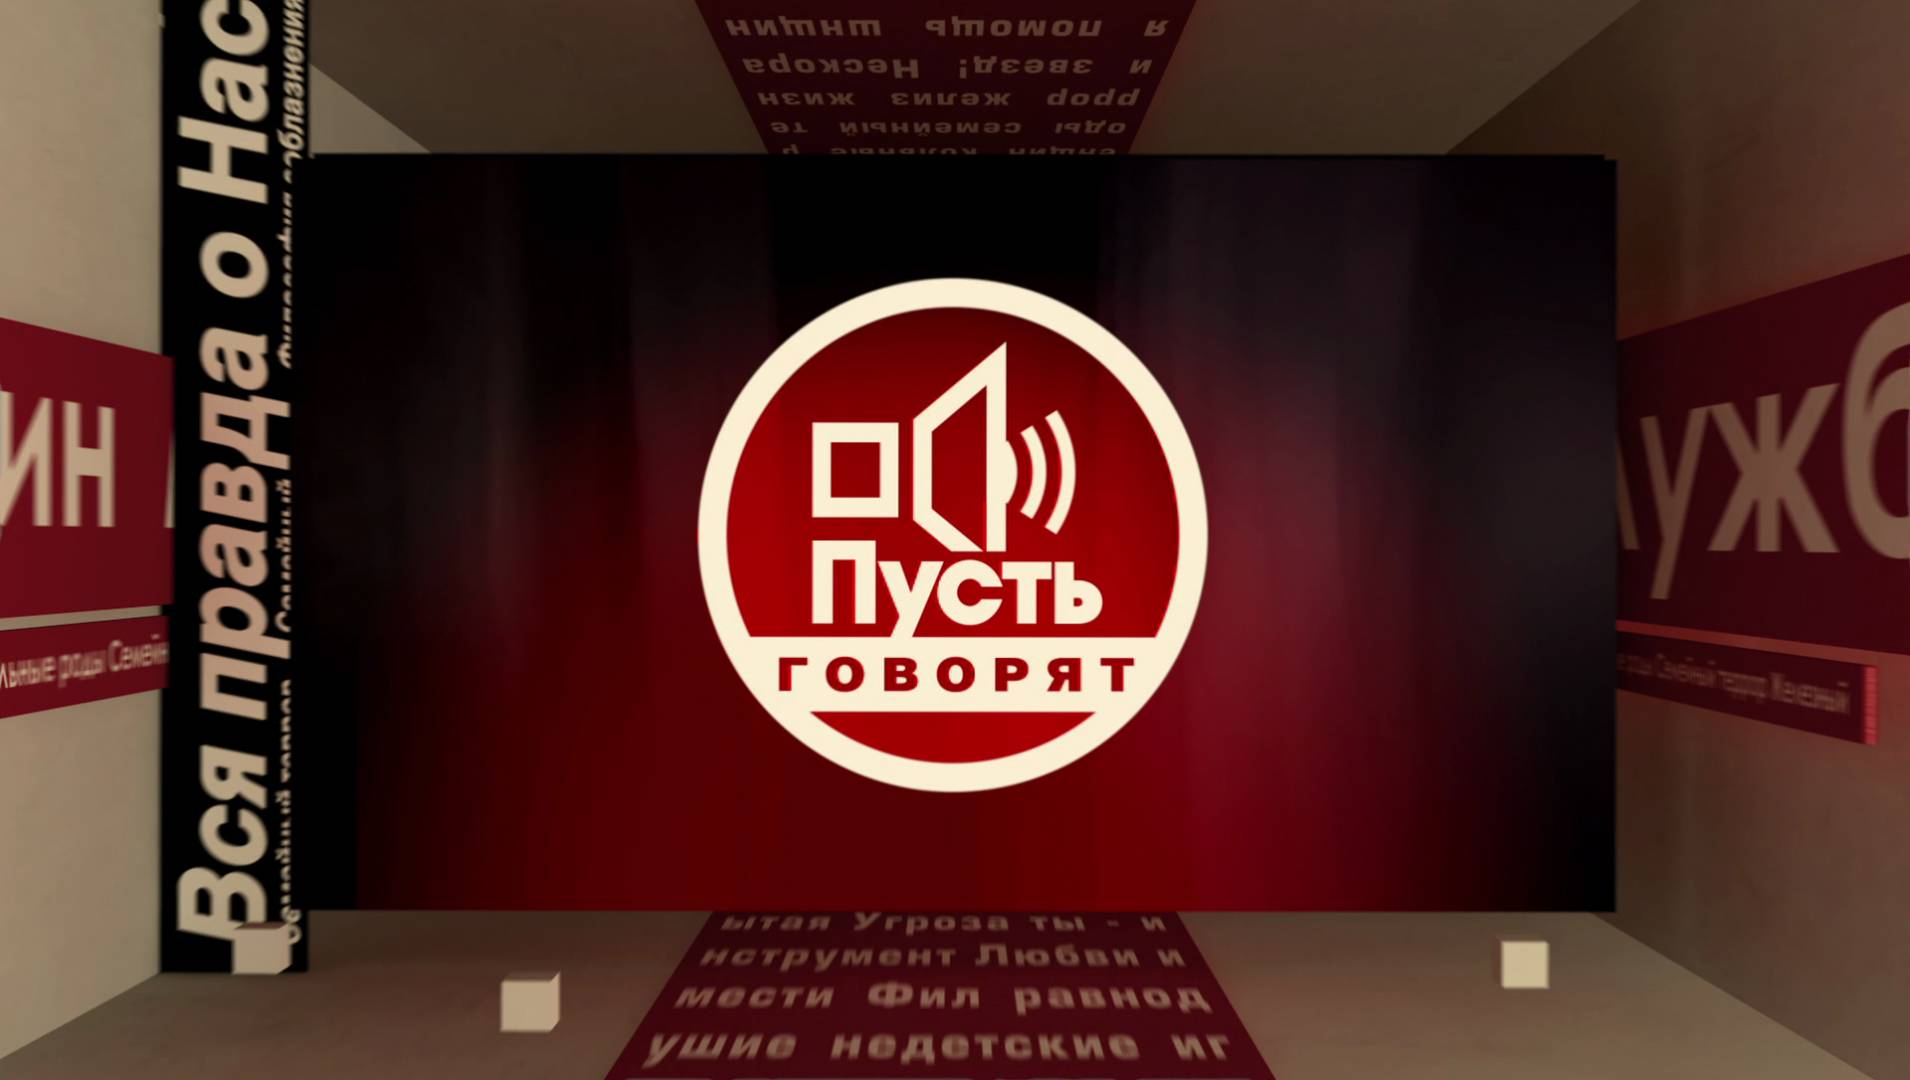 ТВ-шоу «Пусть говорят» 2022: актеры, время выхода и описание на Первом  канале / Channel One Russia